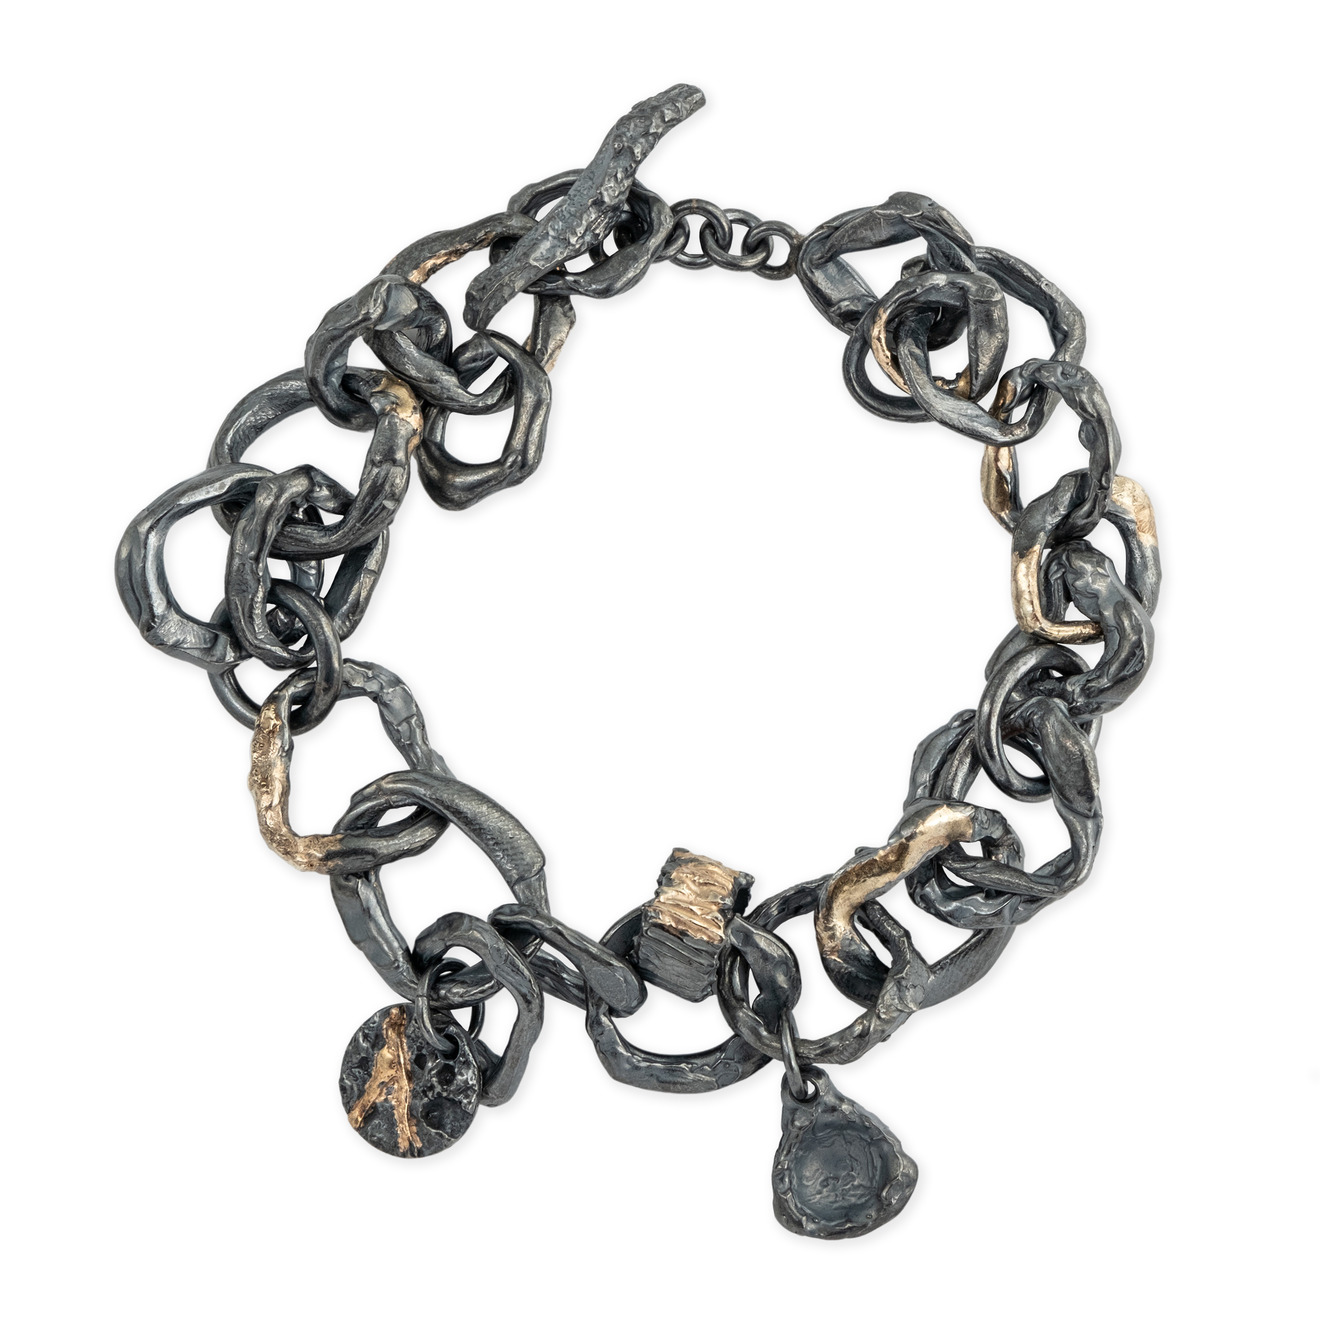 Kintsugi Jewelry Позолоченый браслет из черненого серебра Wabi Sabi kintsugi jewelry позолоченый браслет из черненого серебра wabi sabi